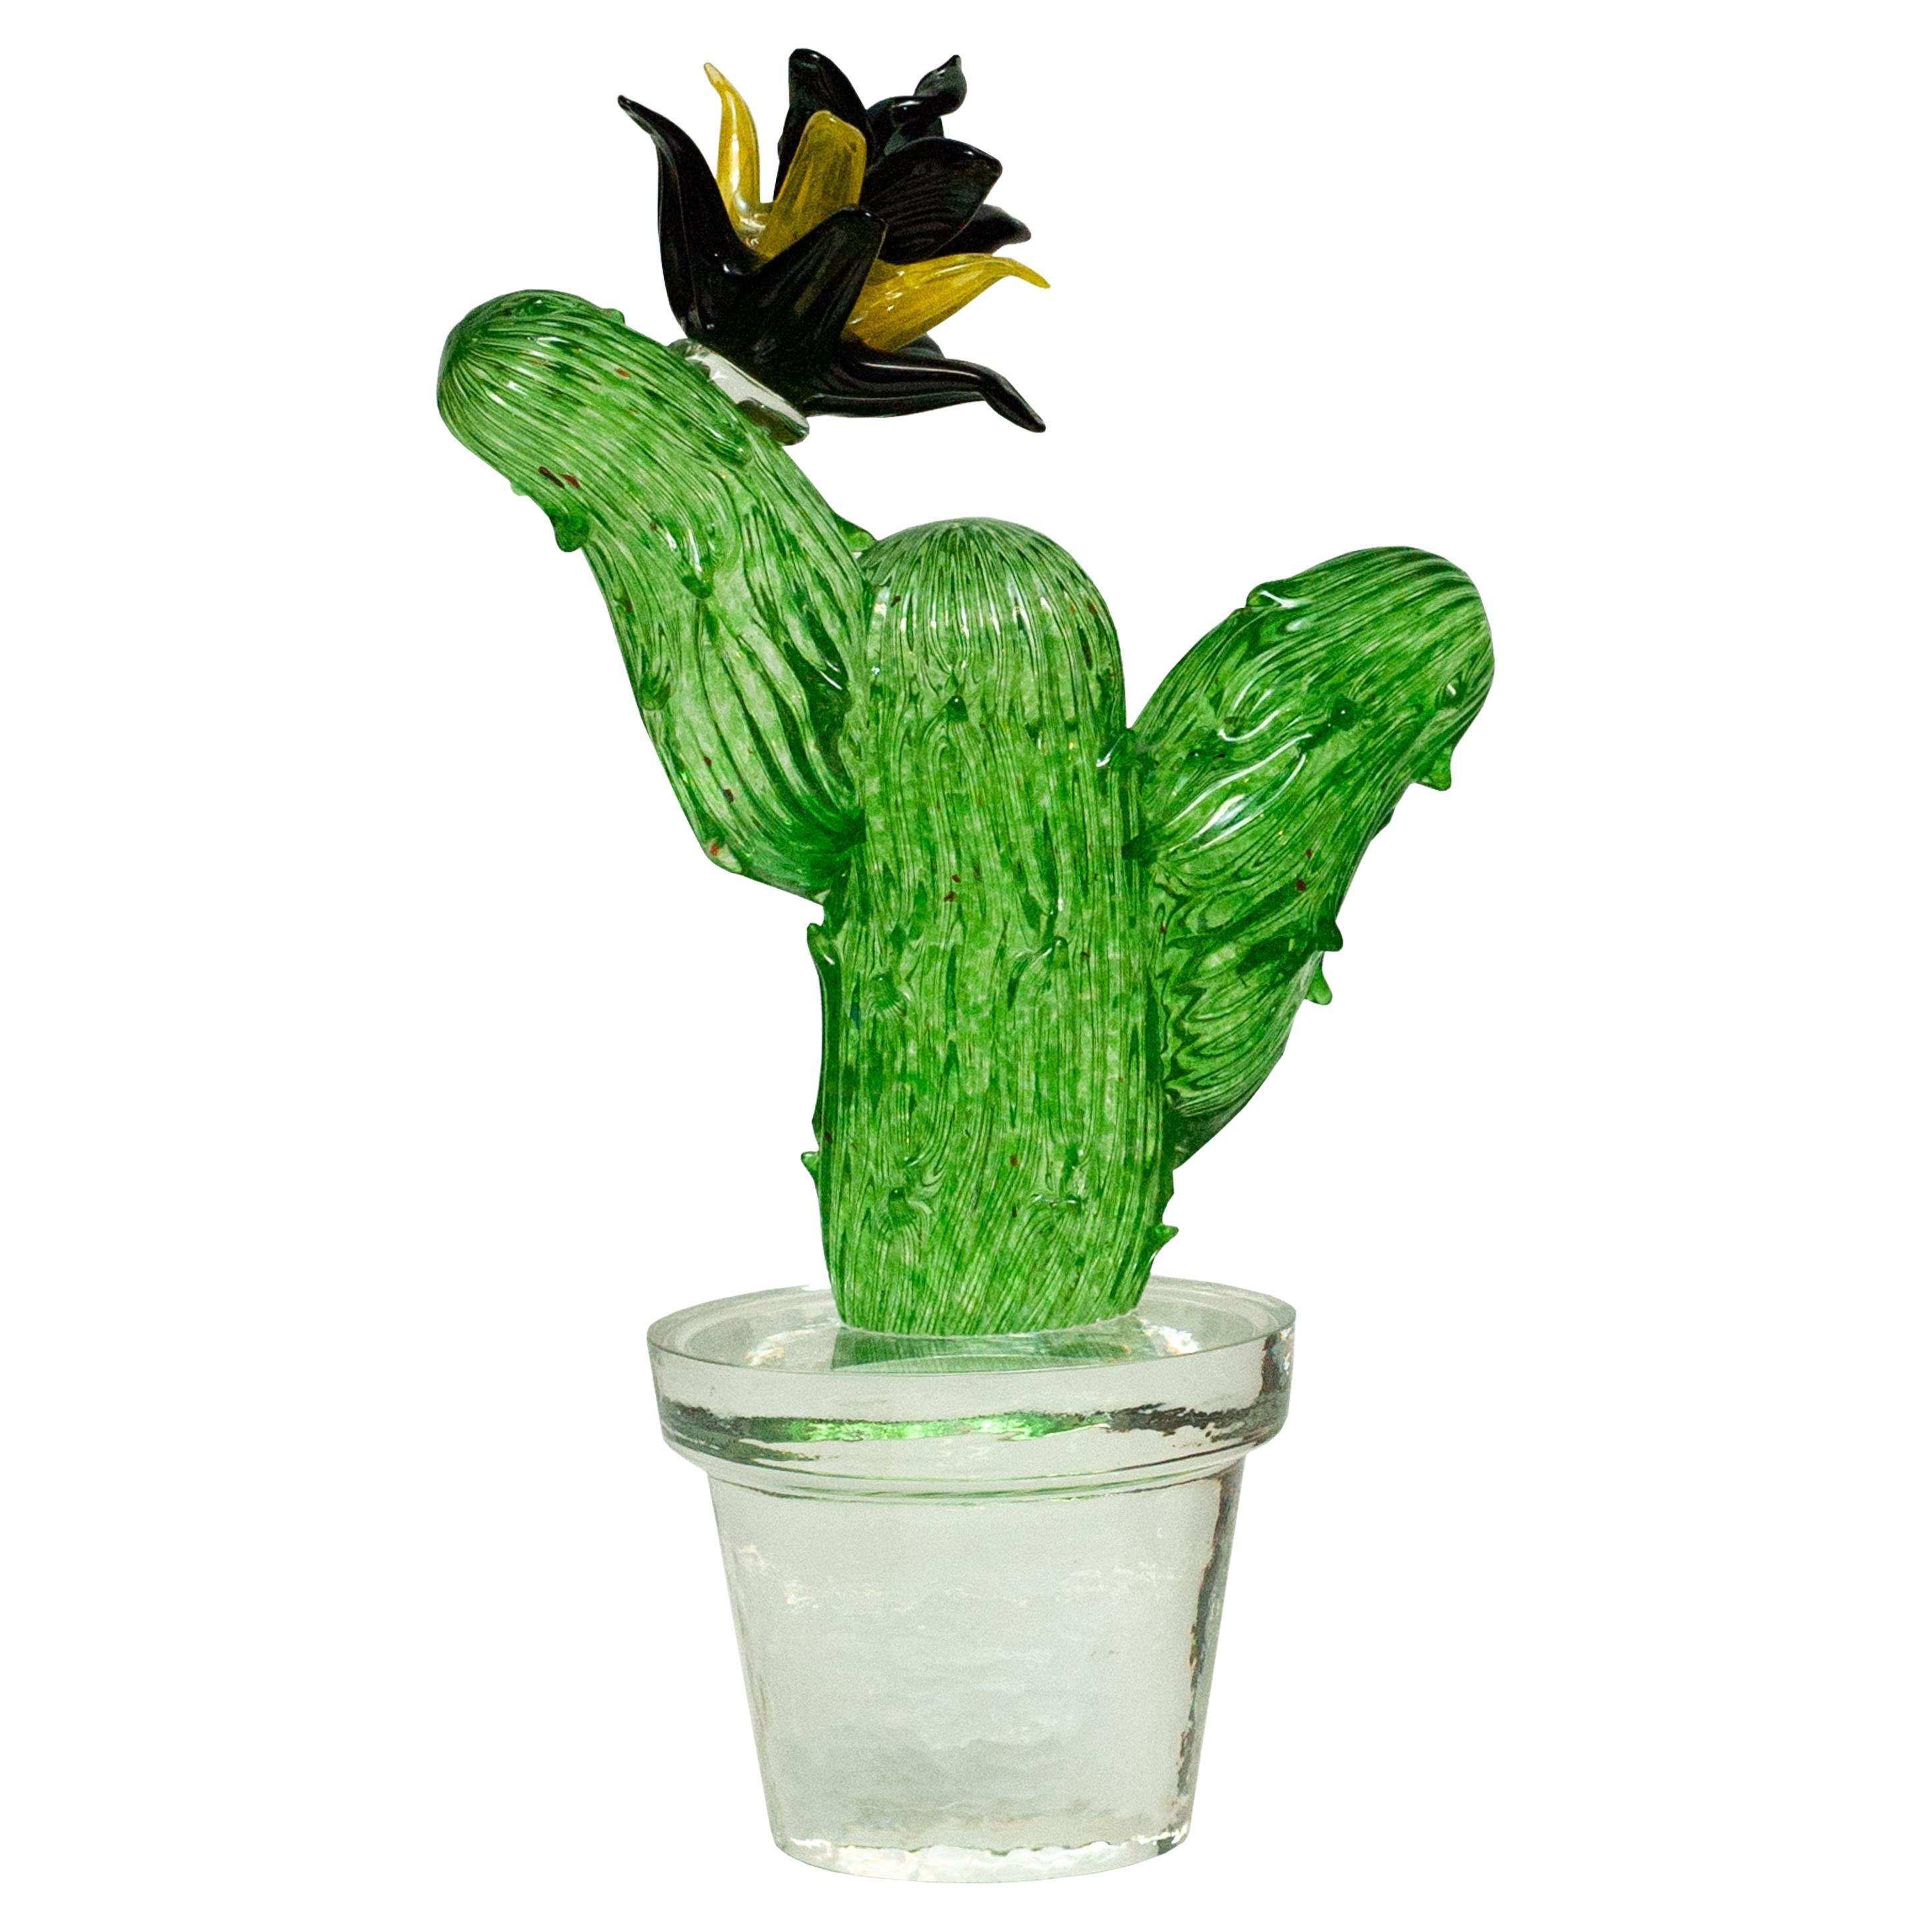 Escultura de cactus de cristal de Murano soplado a mano firmada por Marta Marzotto